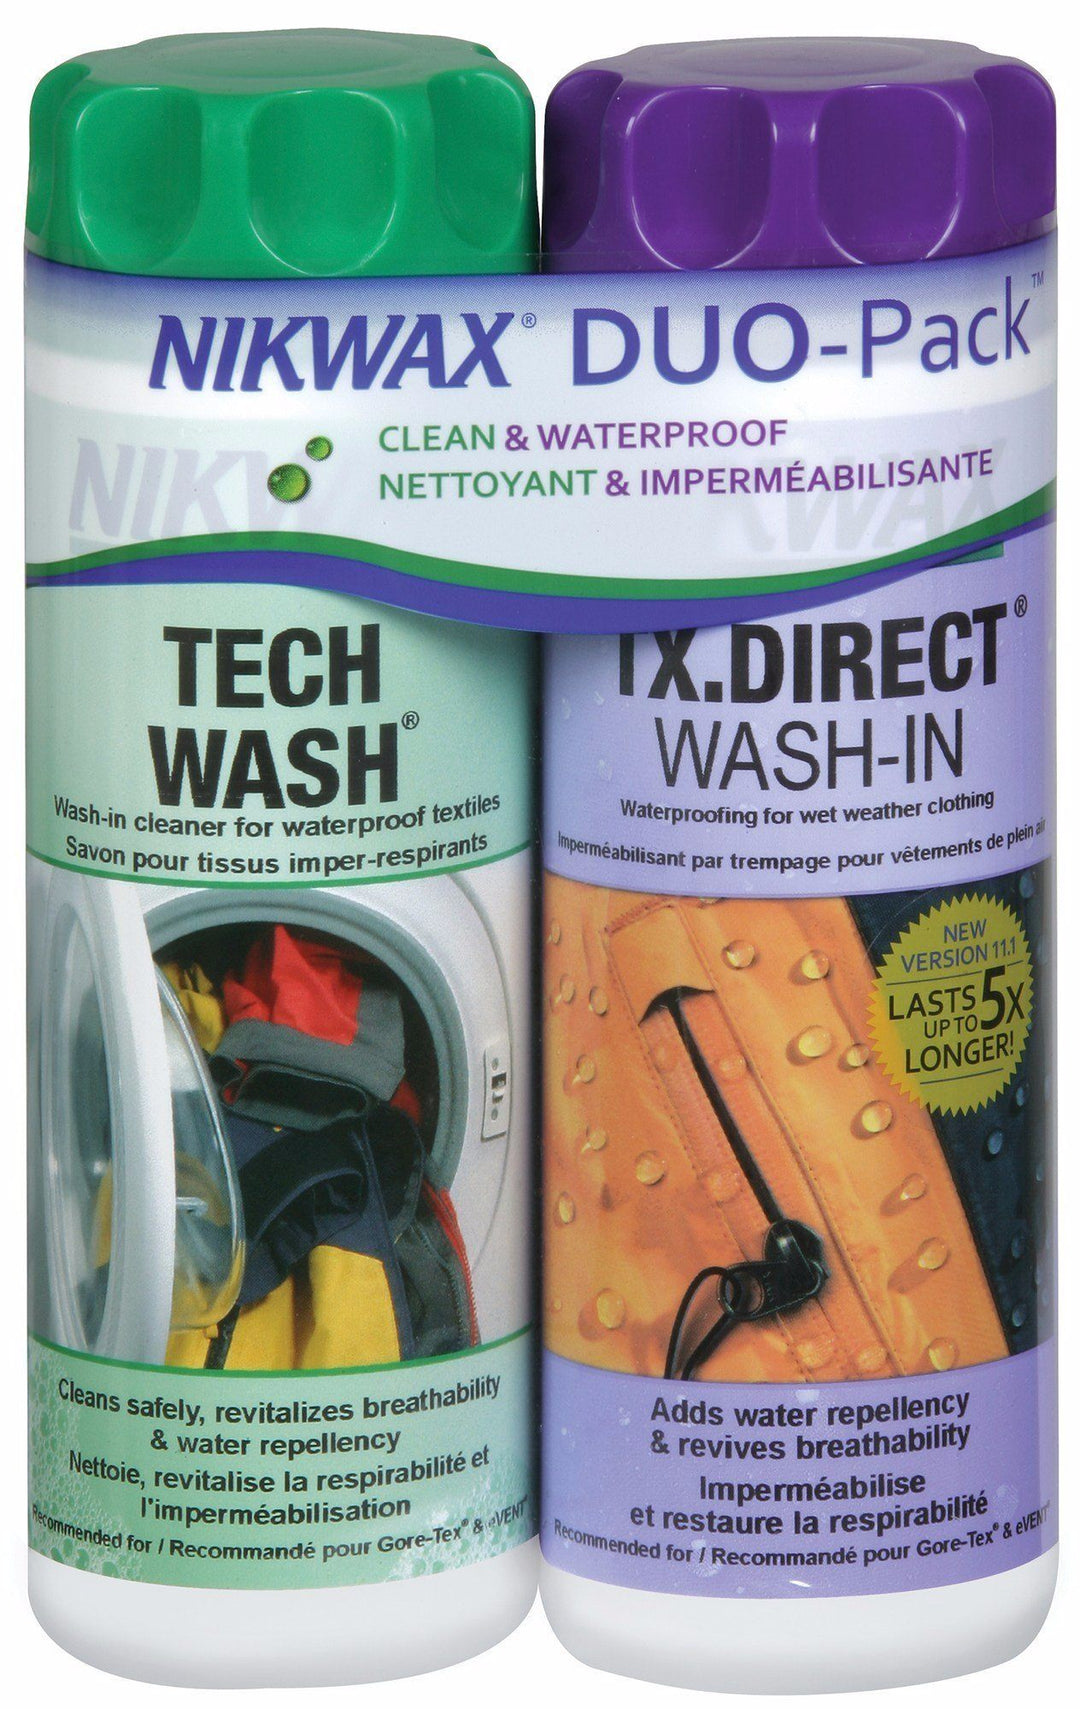 Apparel - Accessories - Cleaning & Waterproofing - Nikwax Clean/Waterproof DuoPack - Hardshell